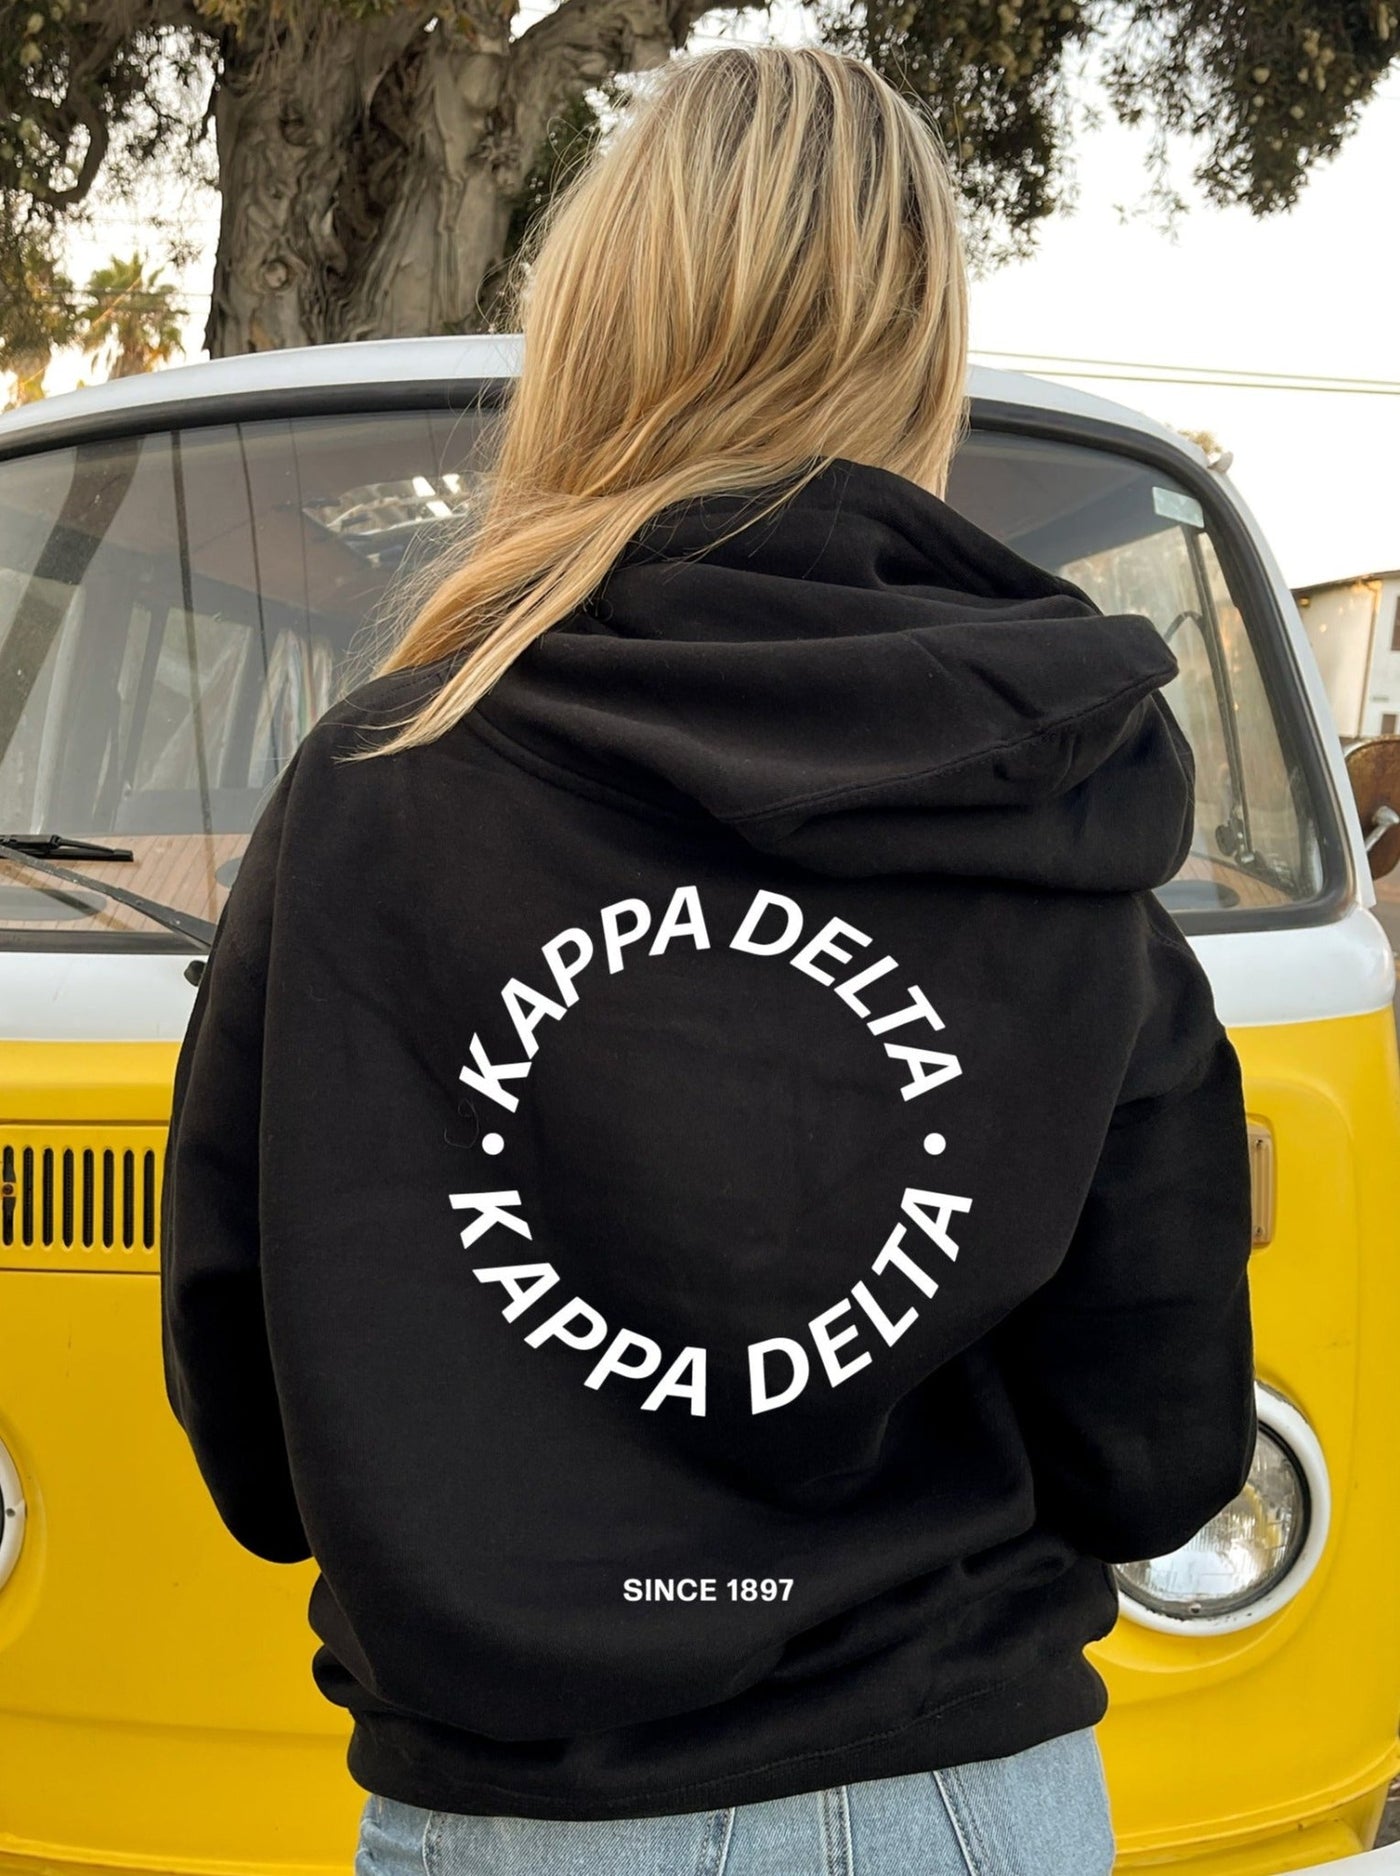 Kappa Delta Simple Trendy Cute Circle Sorority Hoodie Sweatshirt Design Black